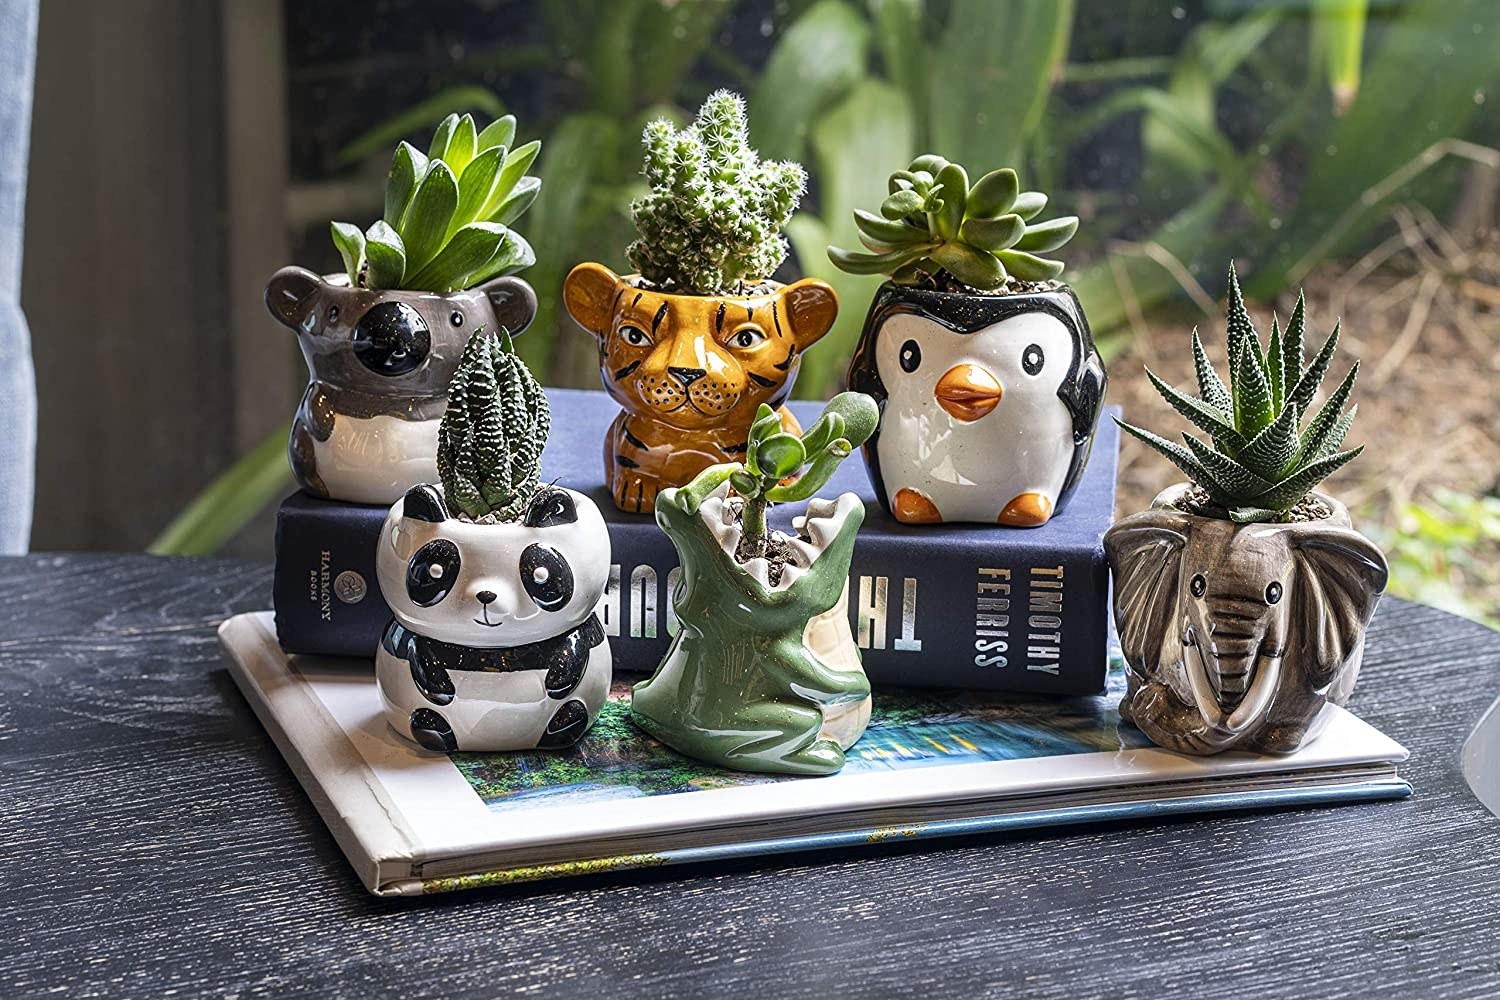 pots shaped like a panda, penguin, tiger, elephant, koala, and crocodile